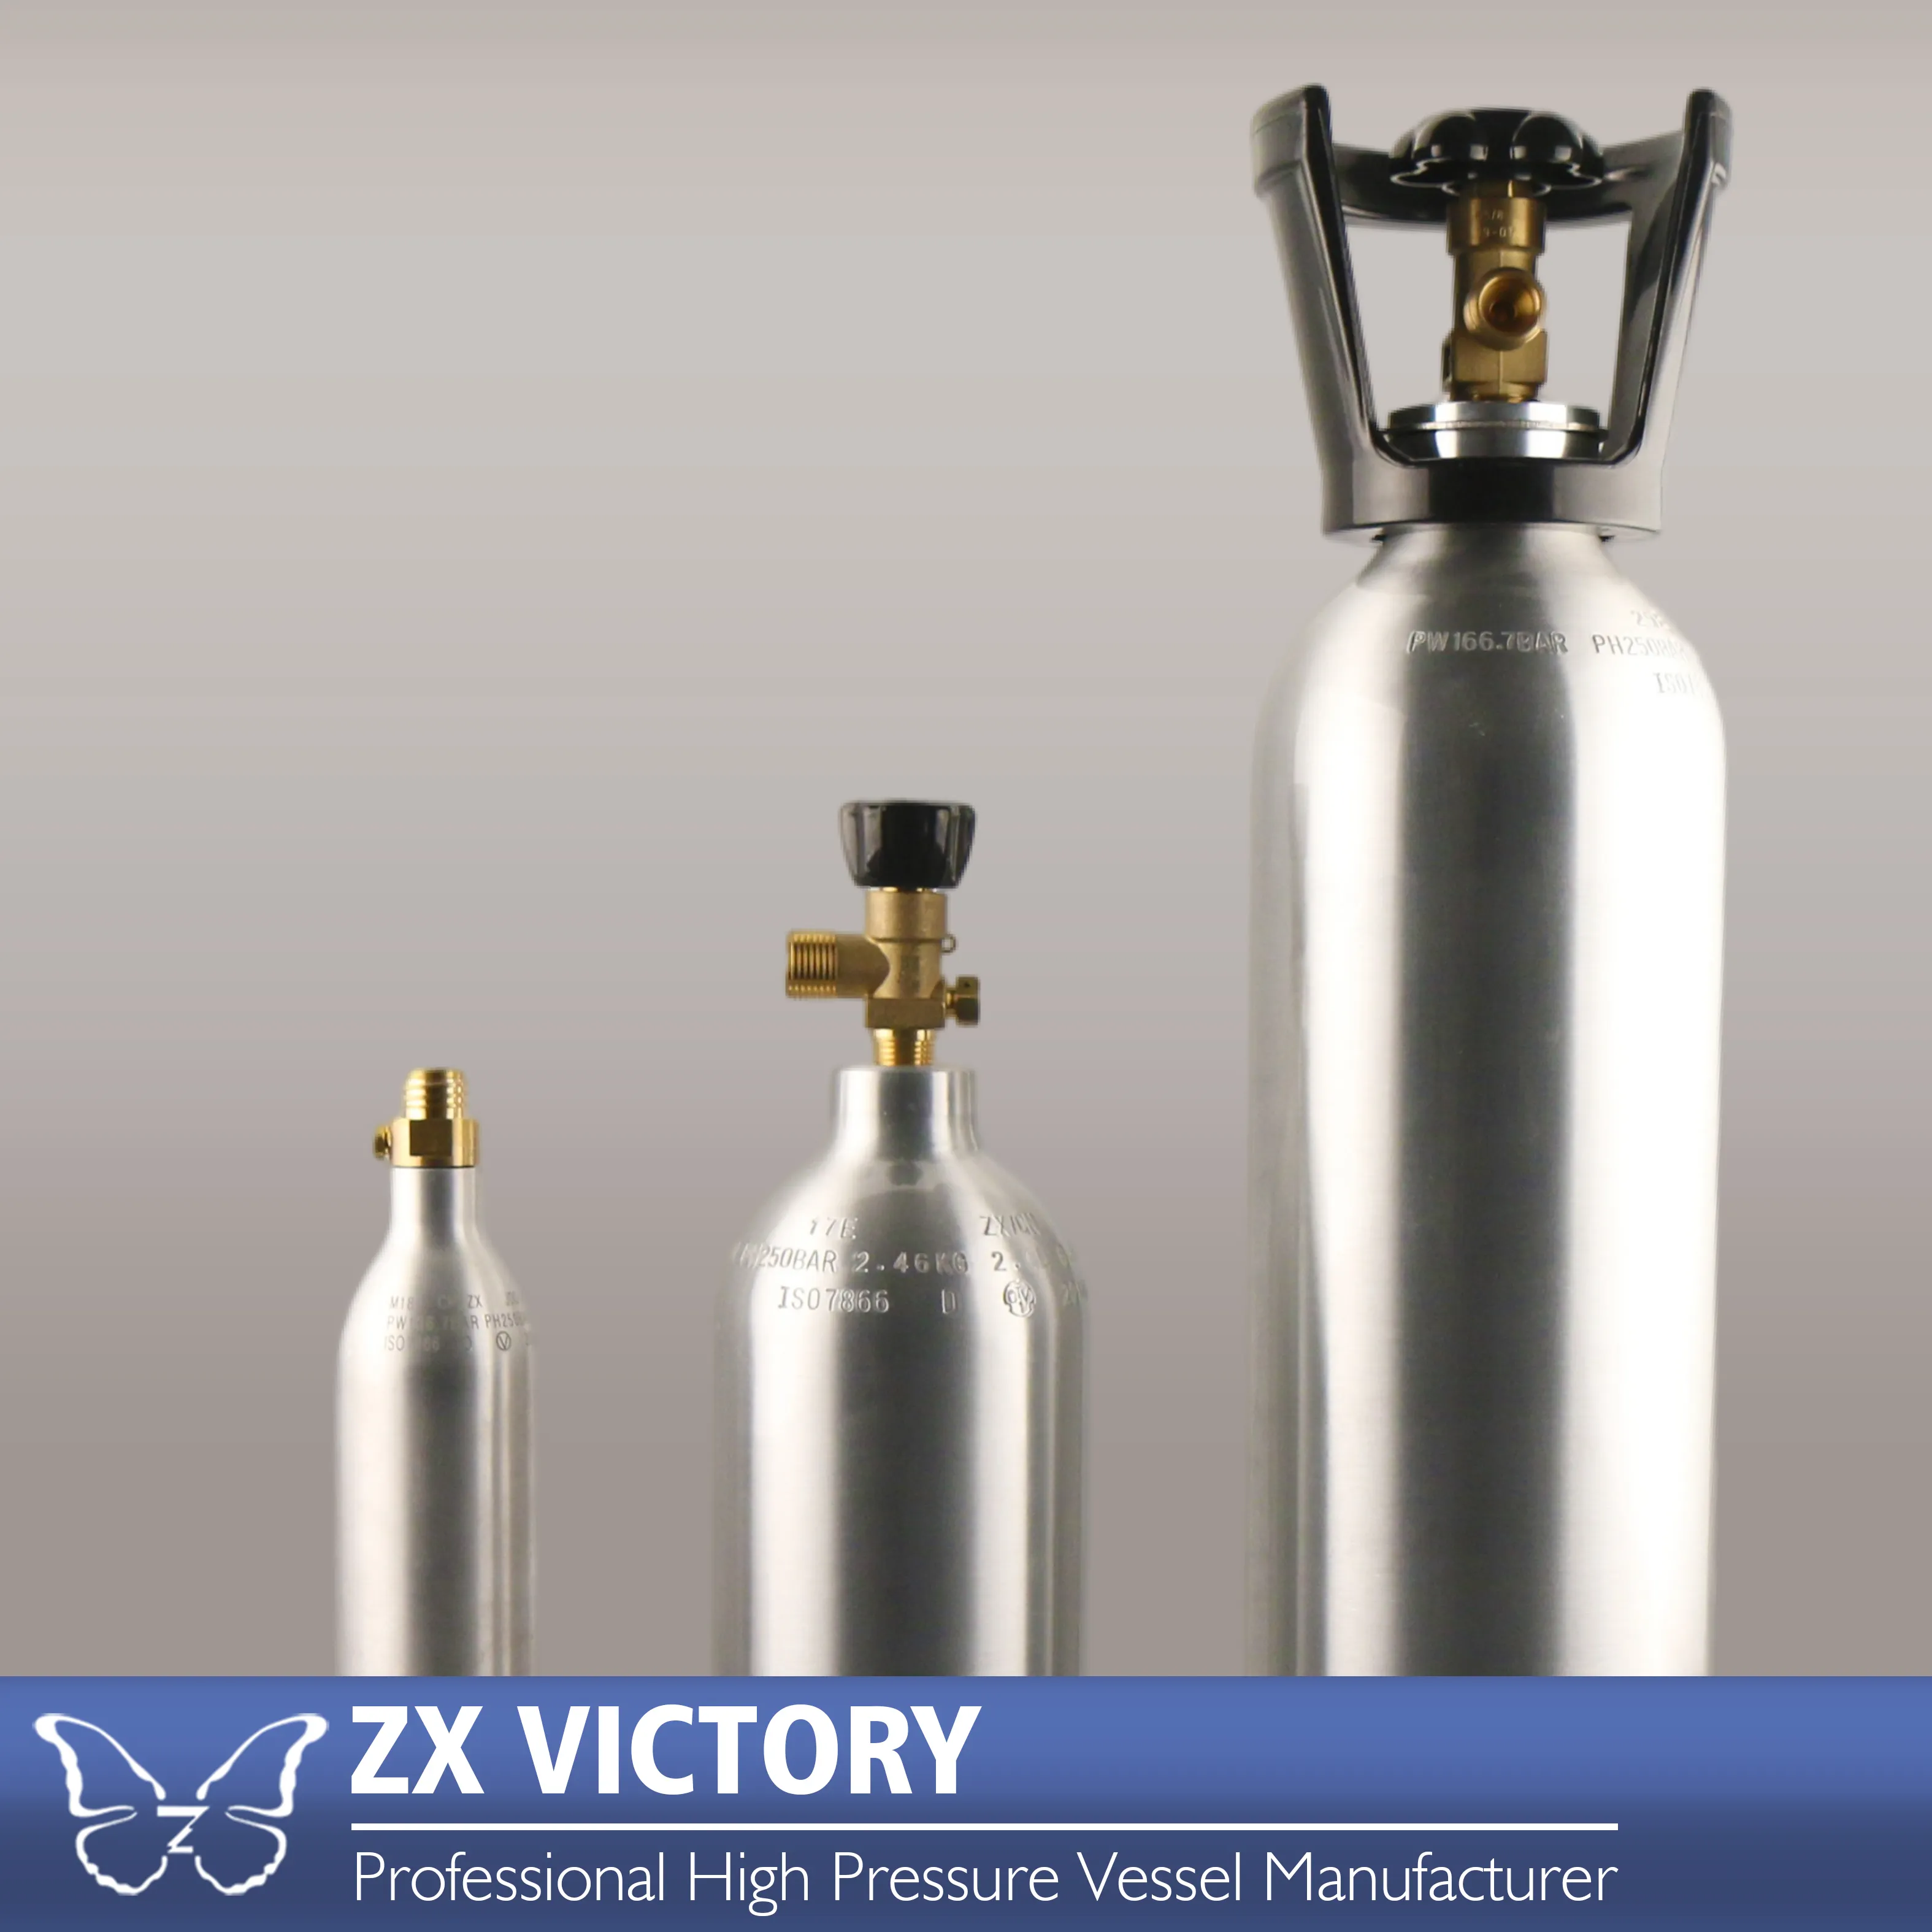 ขวดอลูมิเนียมถังแก๊สสำหรับเครื่องทำโซดา0.29,TPED 21.5 L-CO2 L ภาชนะรับความดันสูง